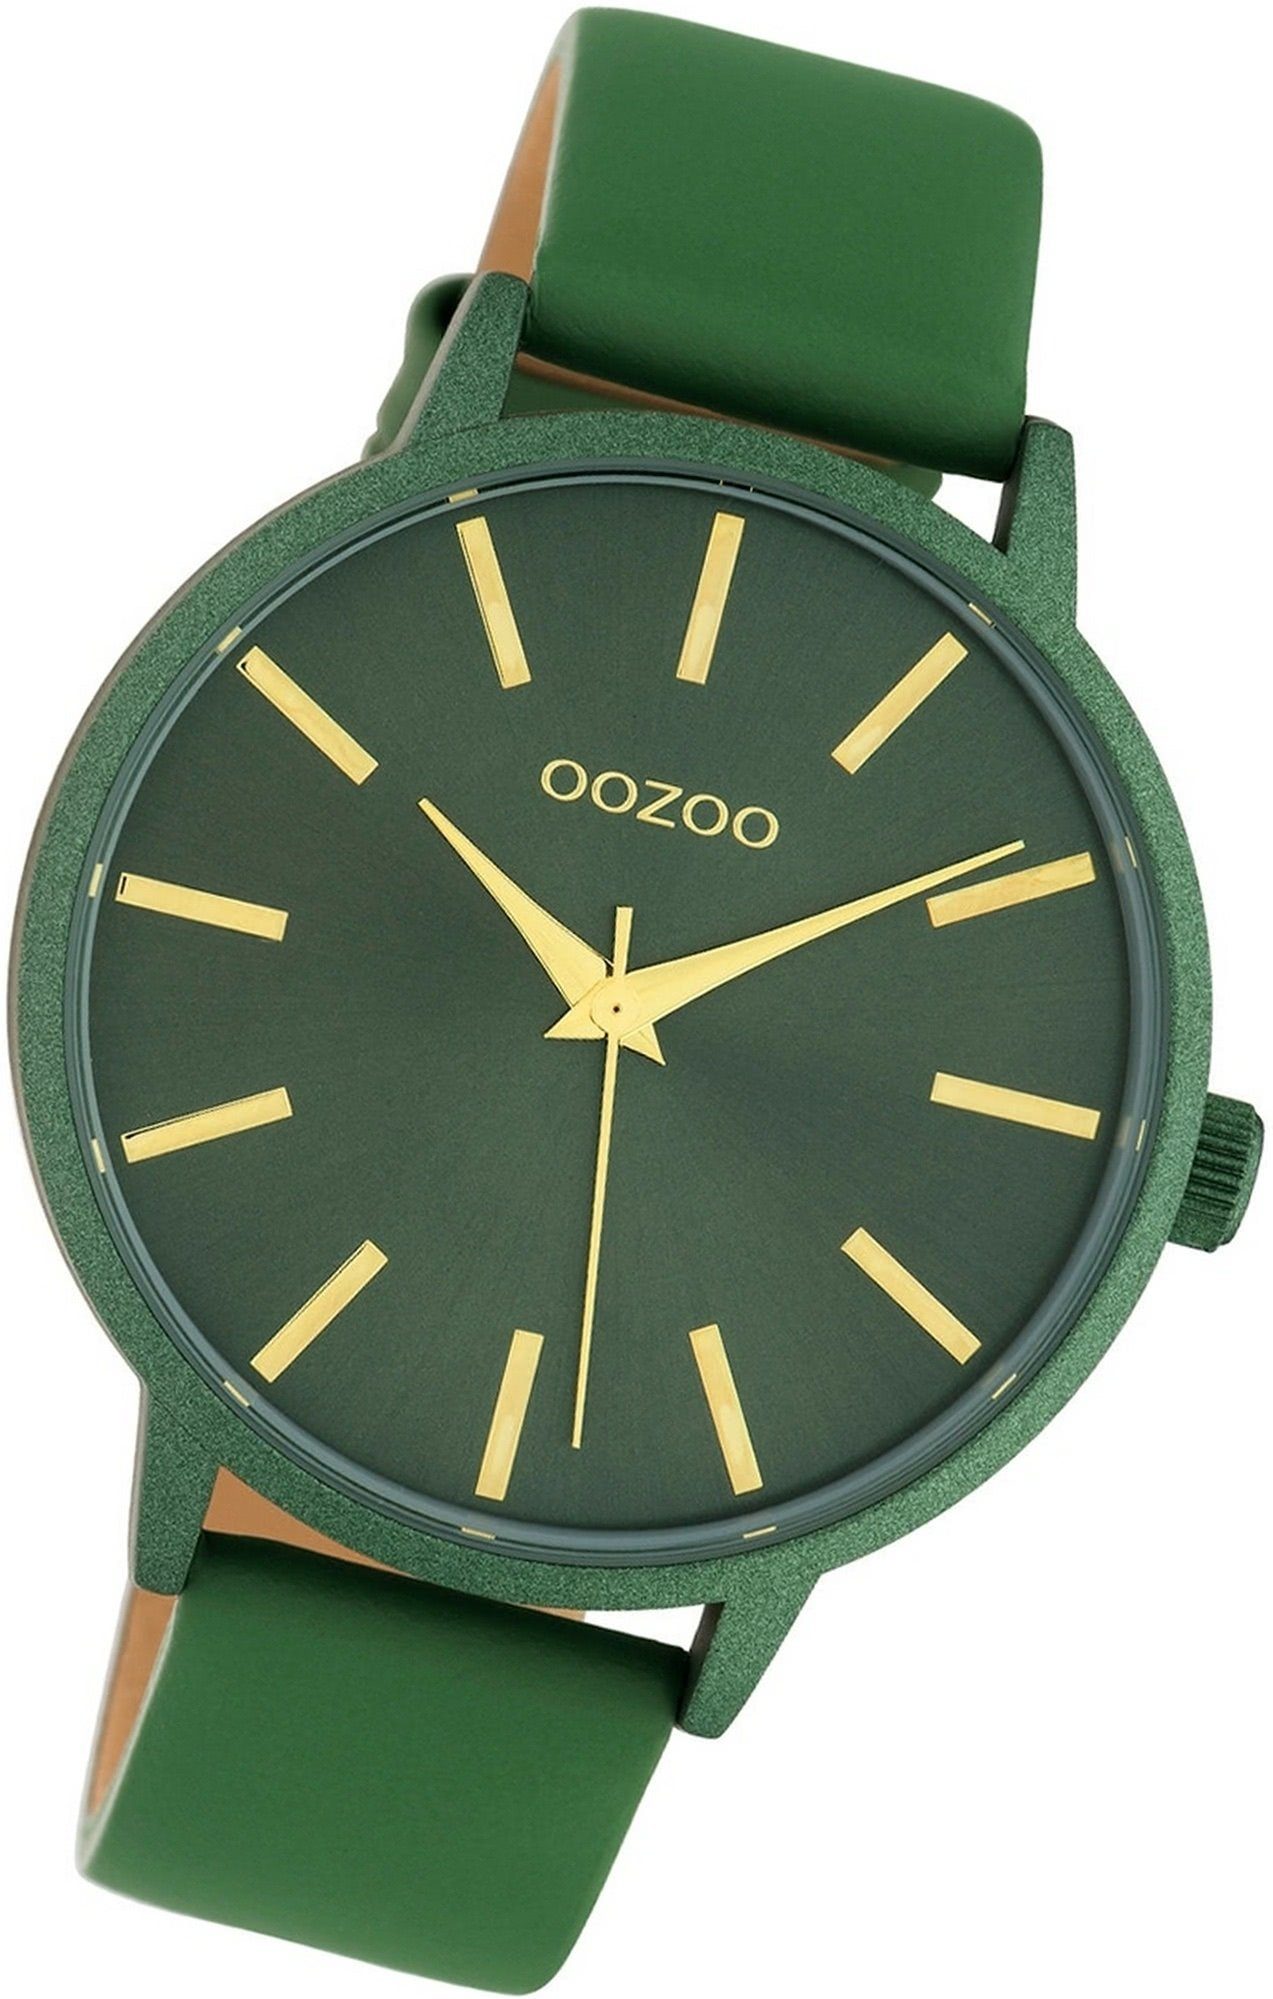 OOZOO Quarzuhr Oozoo Leder grün, Gehäuse, Damen Damenuhr Analog, C10616 rundes (ca. Uhr Lederarmband groß 42mm)